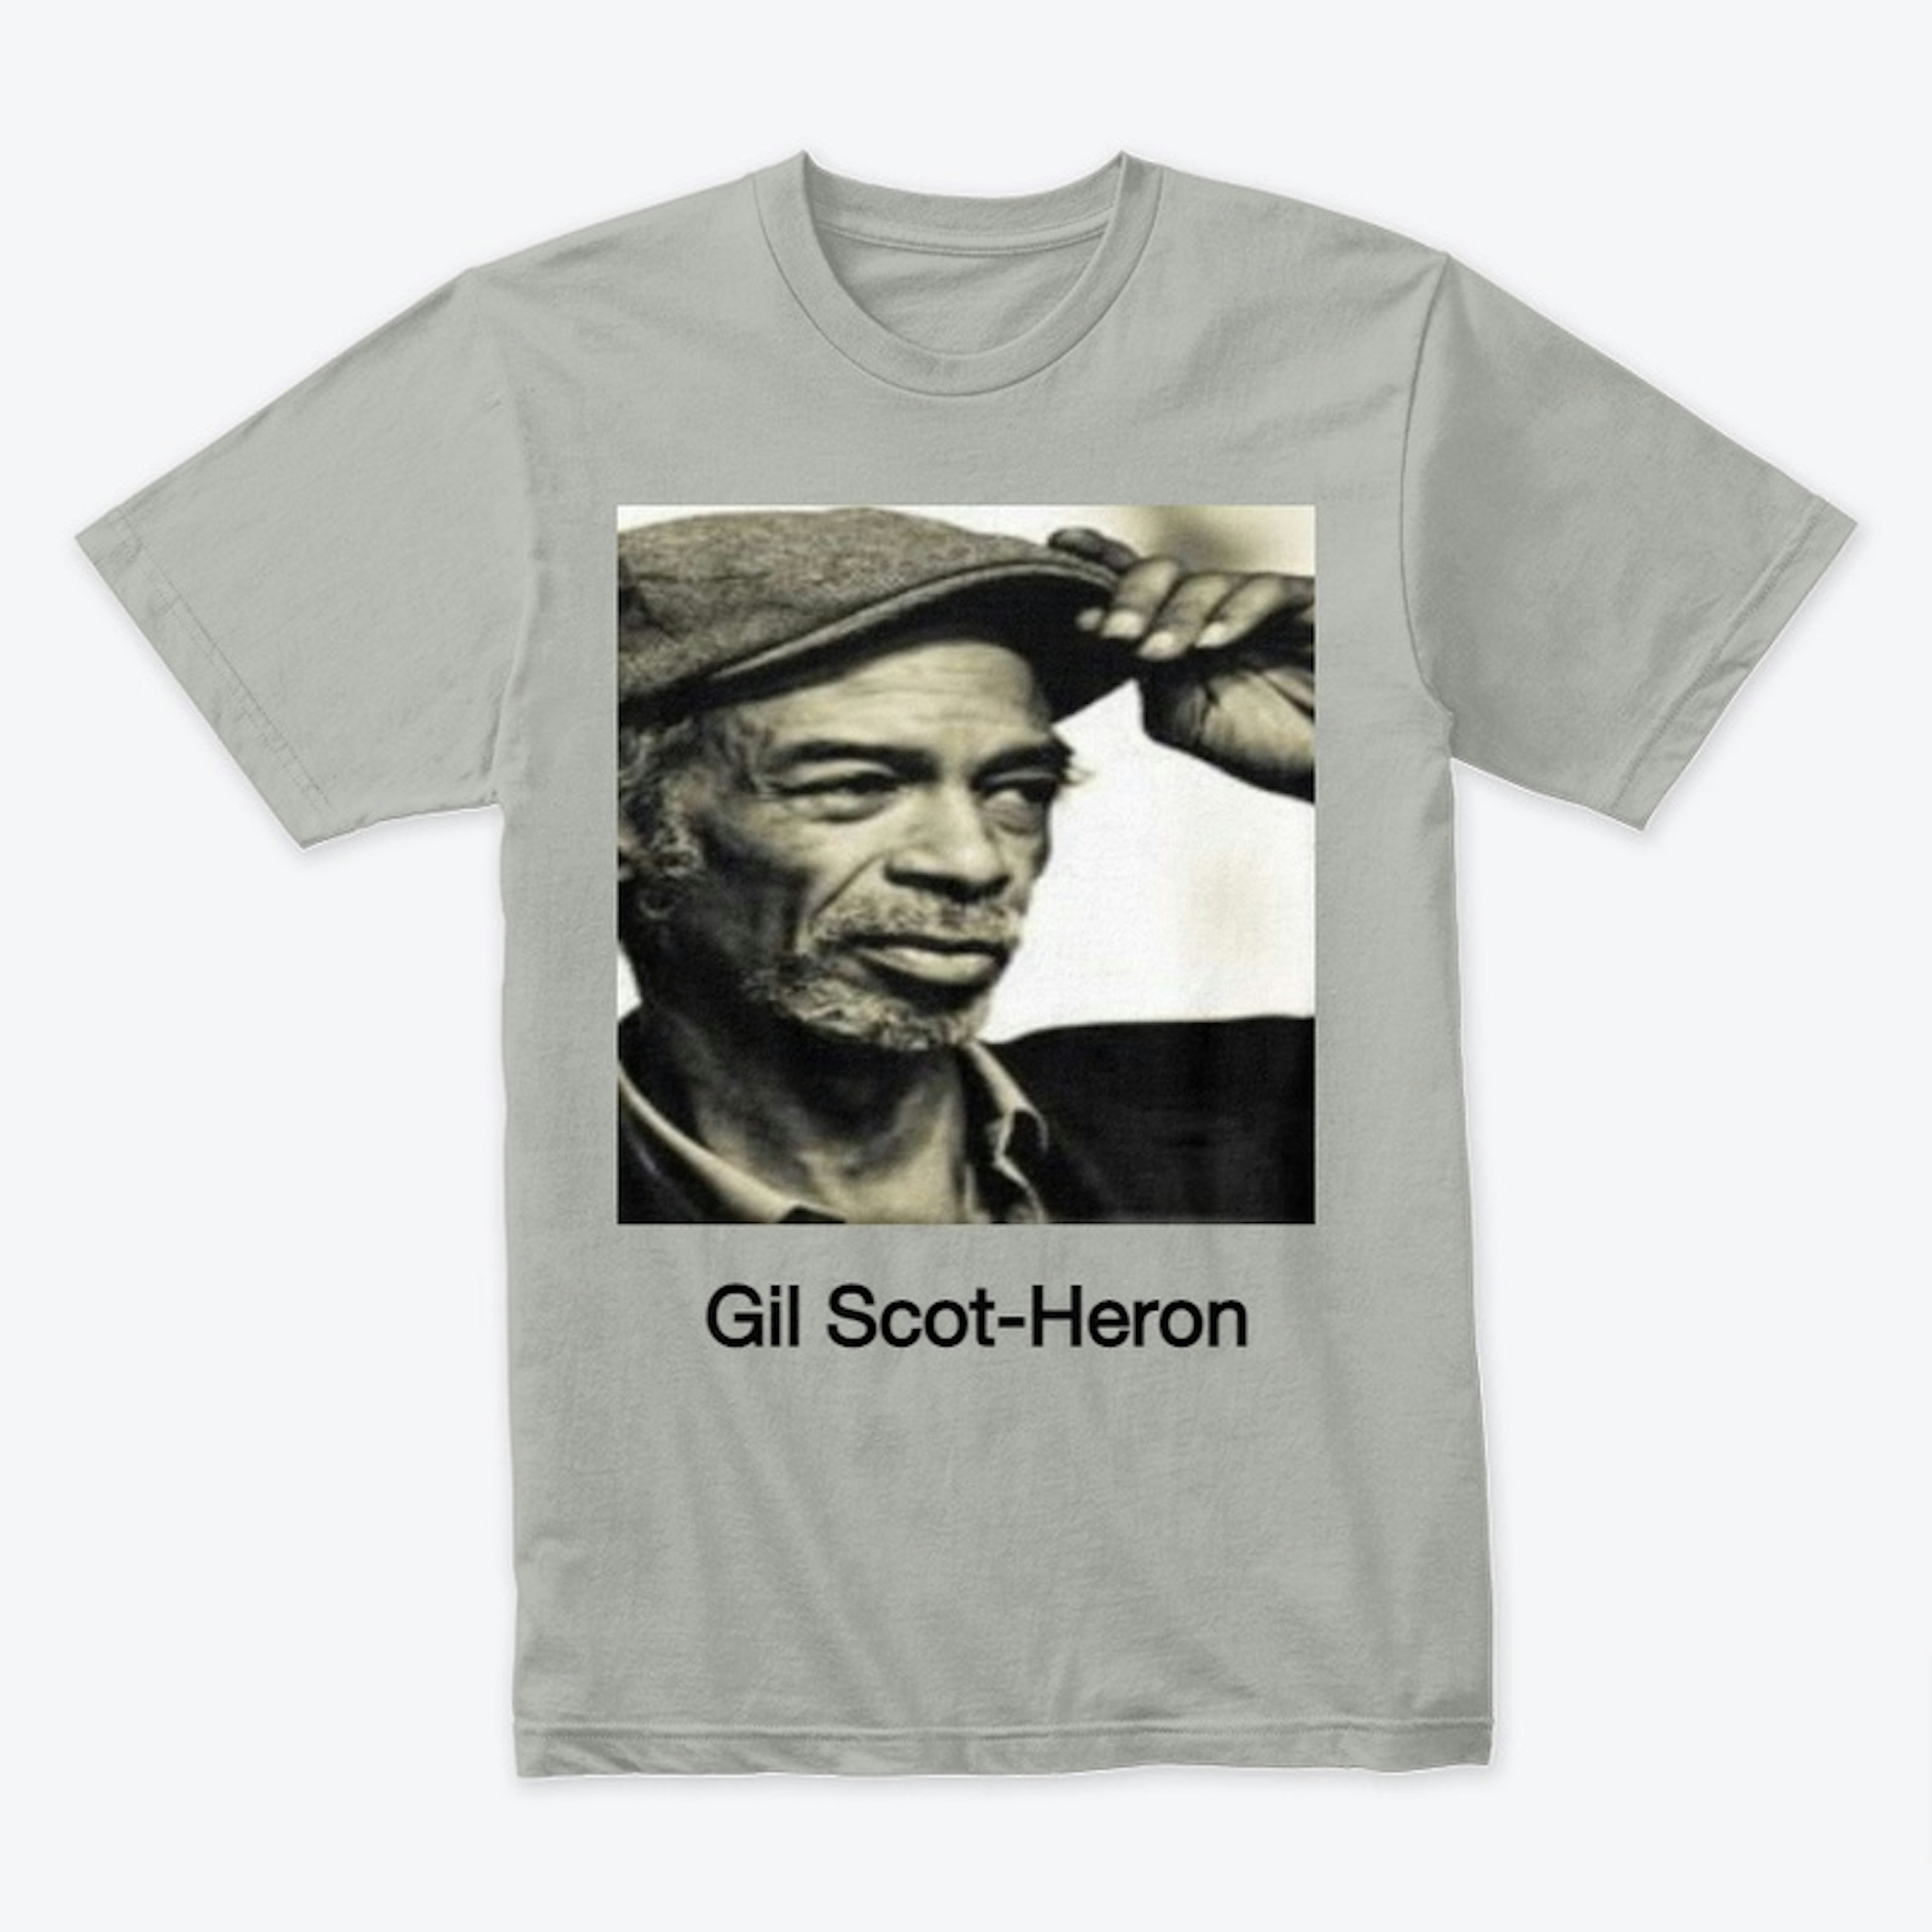 GIL SCOT-HERON